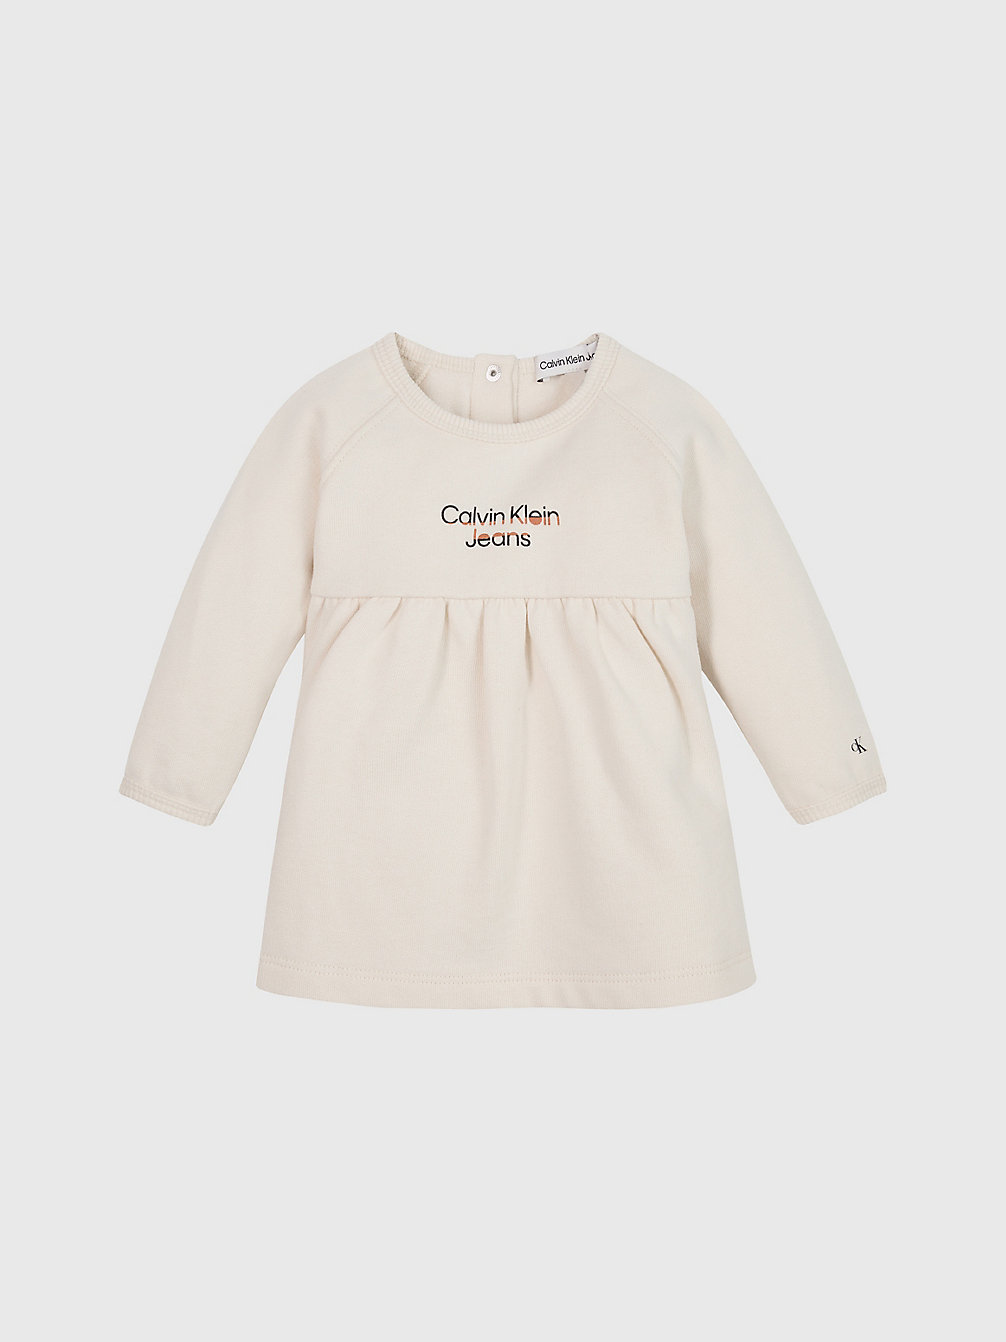 WHITECAP GRAY Baby-Kleid Aus Fleece Mit Logo undefined undefined Calvin Klein